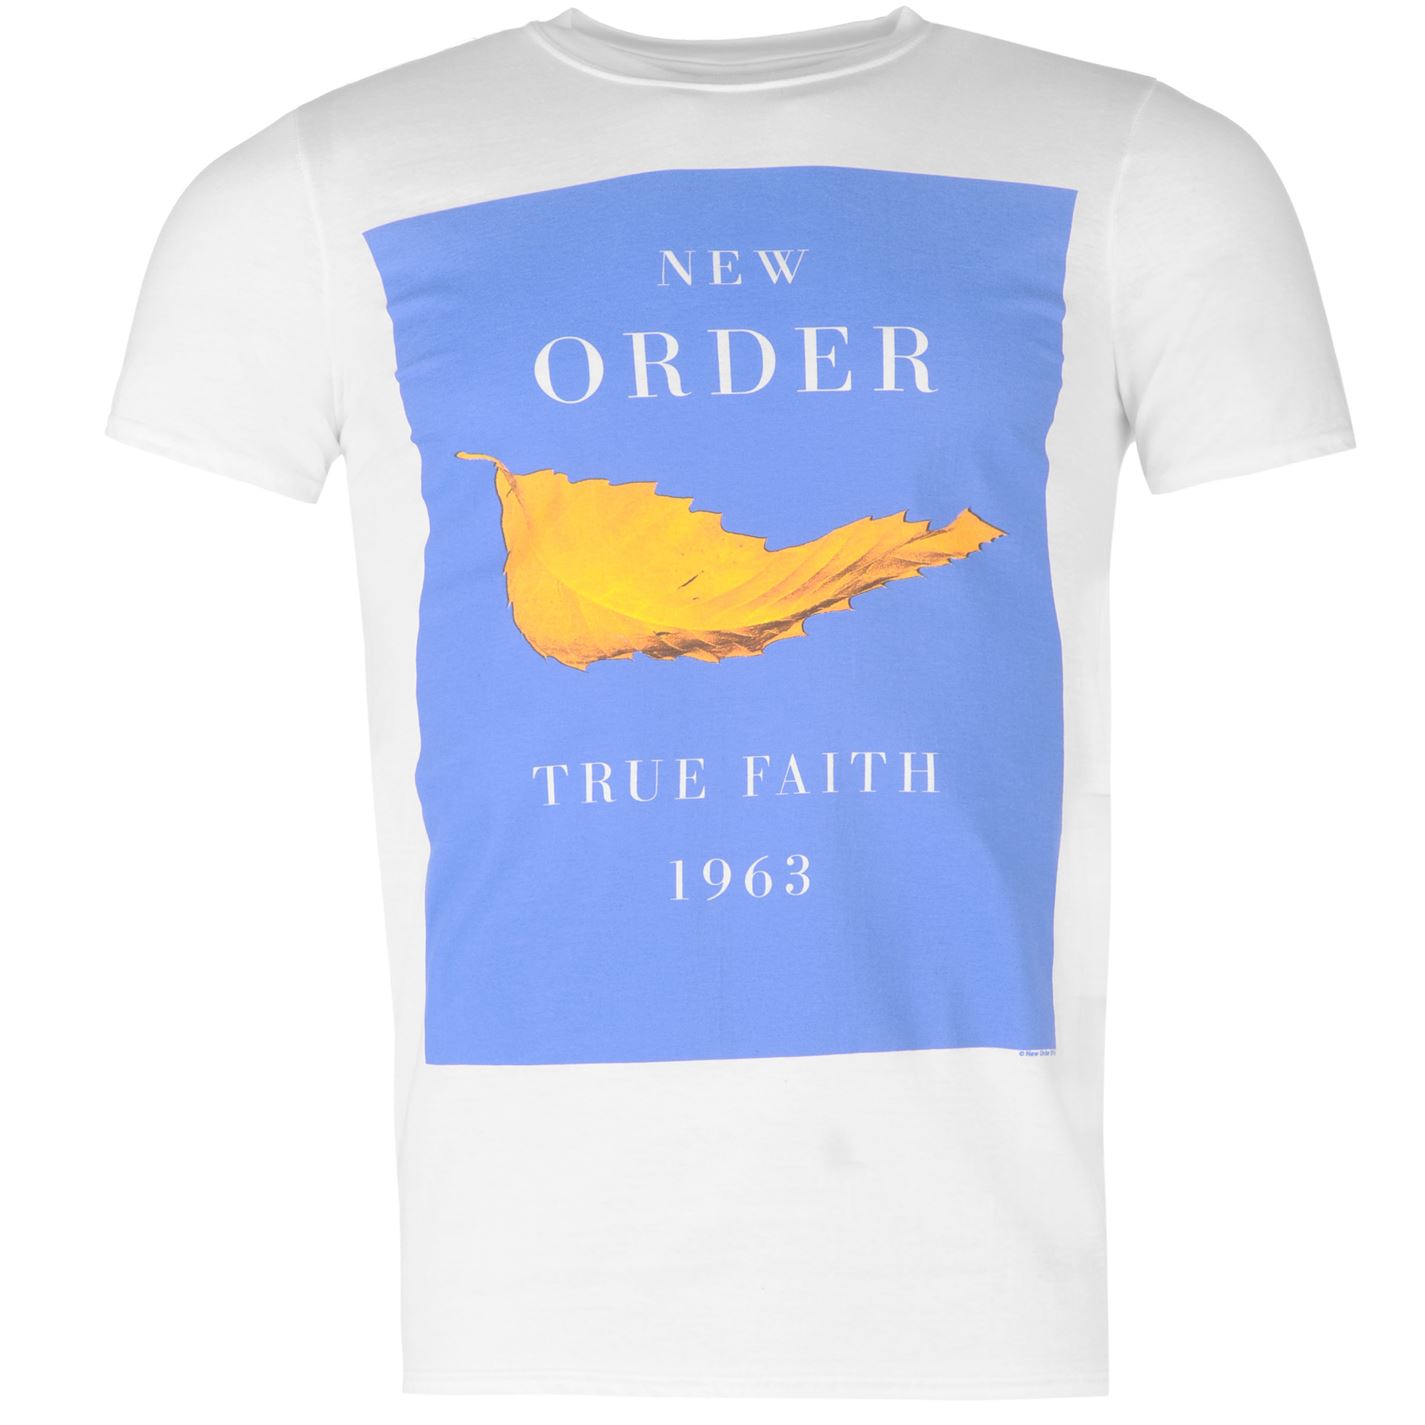 Футболка New order. Майка с New order. Футболка true Faith. New order true Faith. True faith new